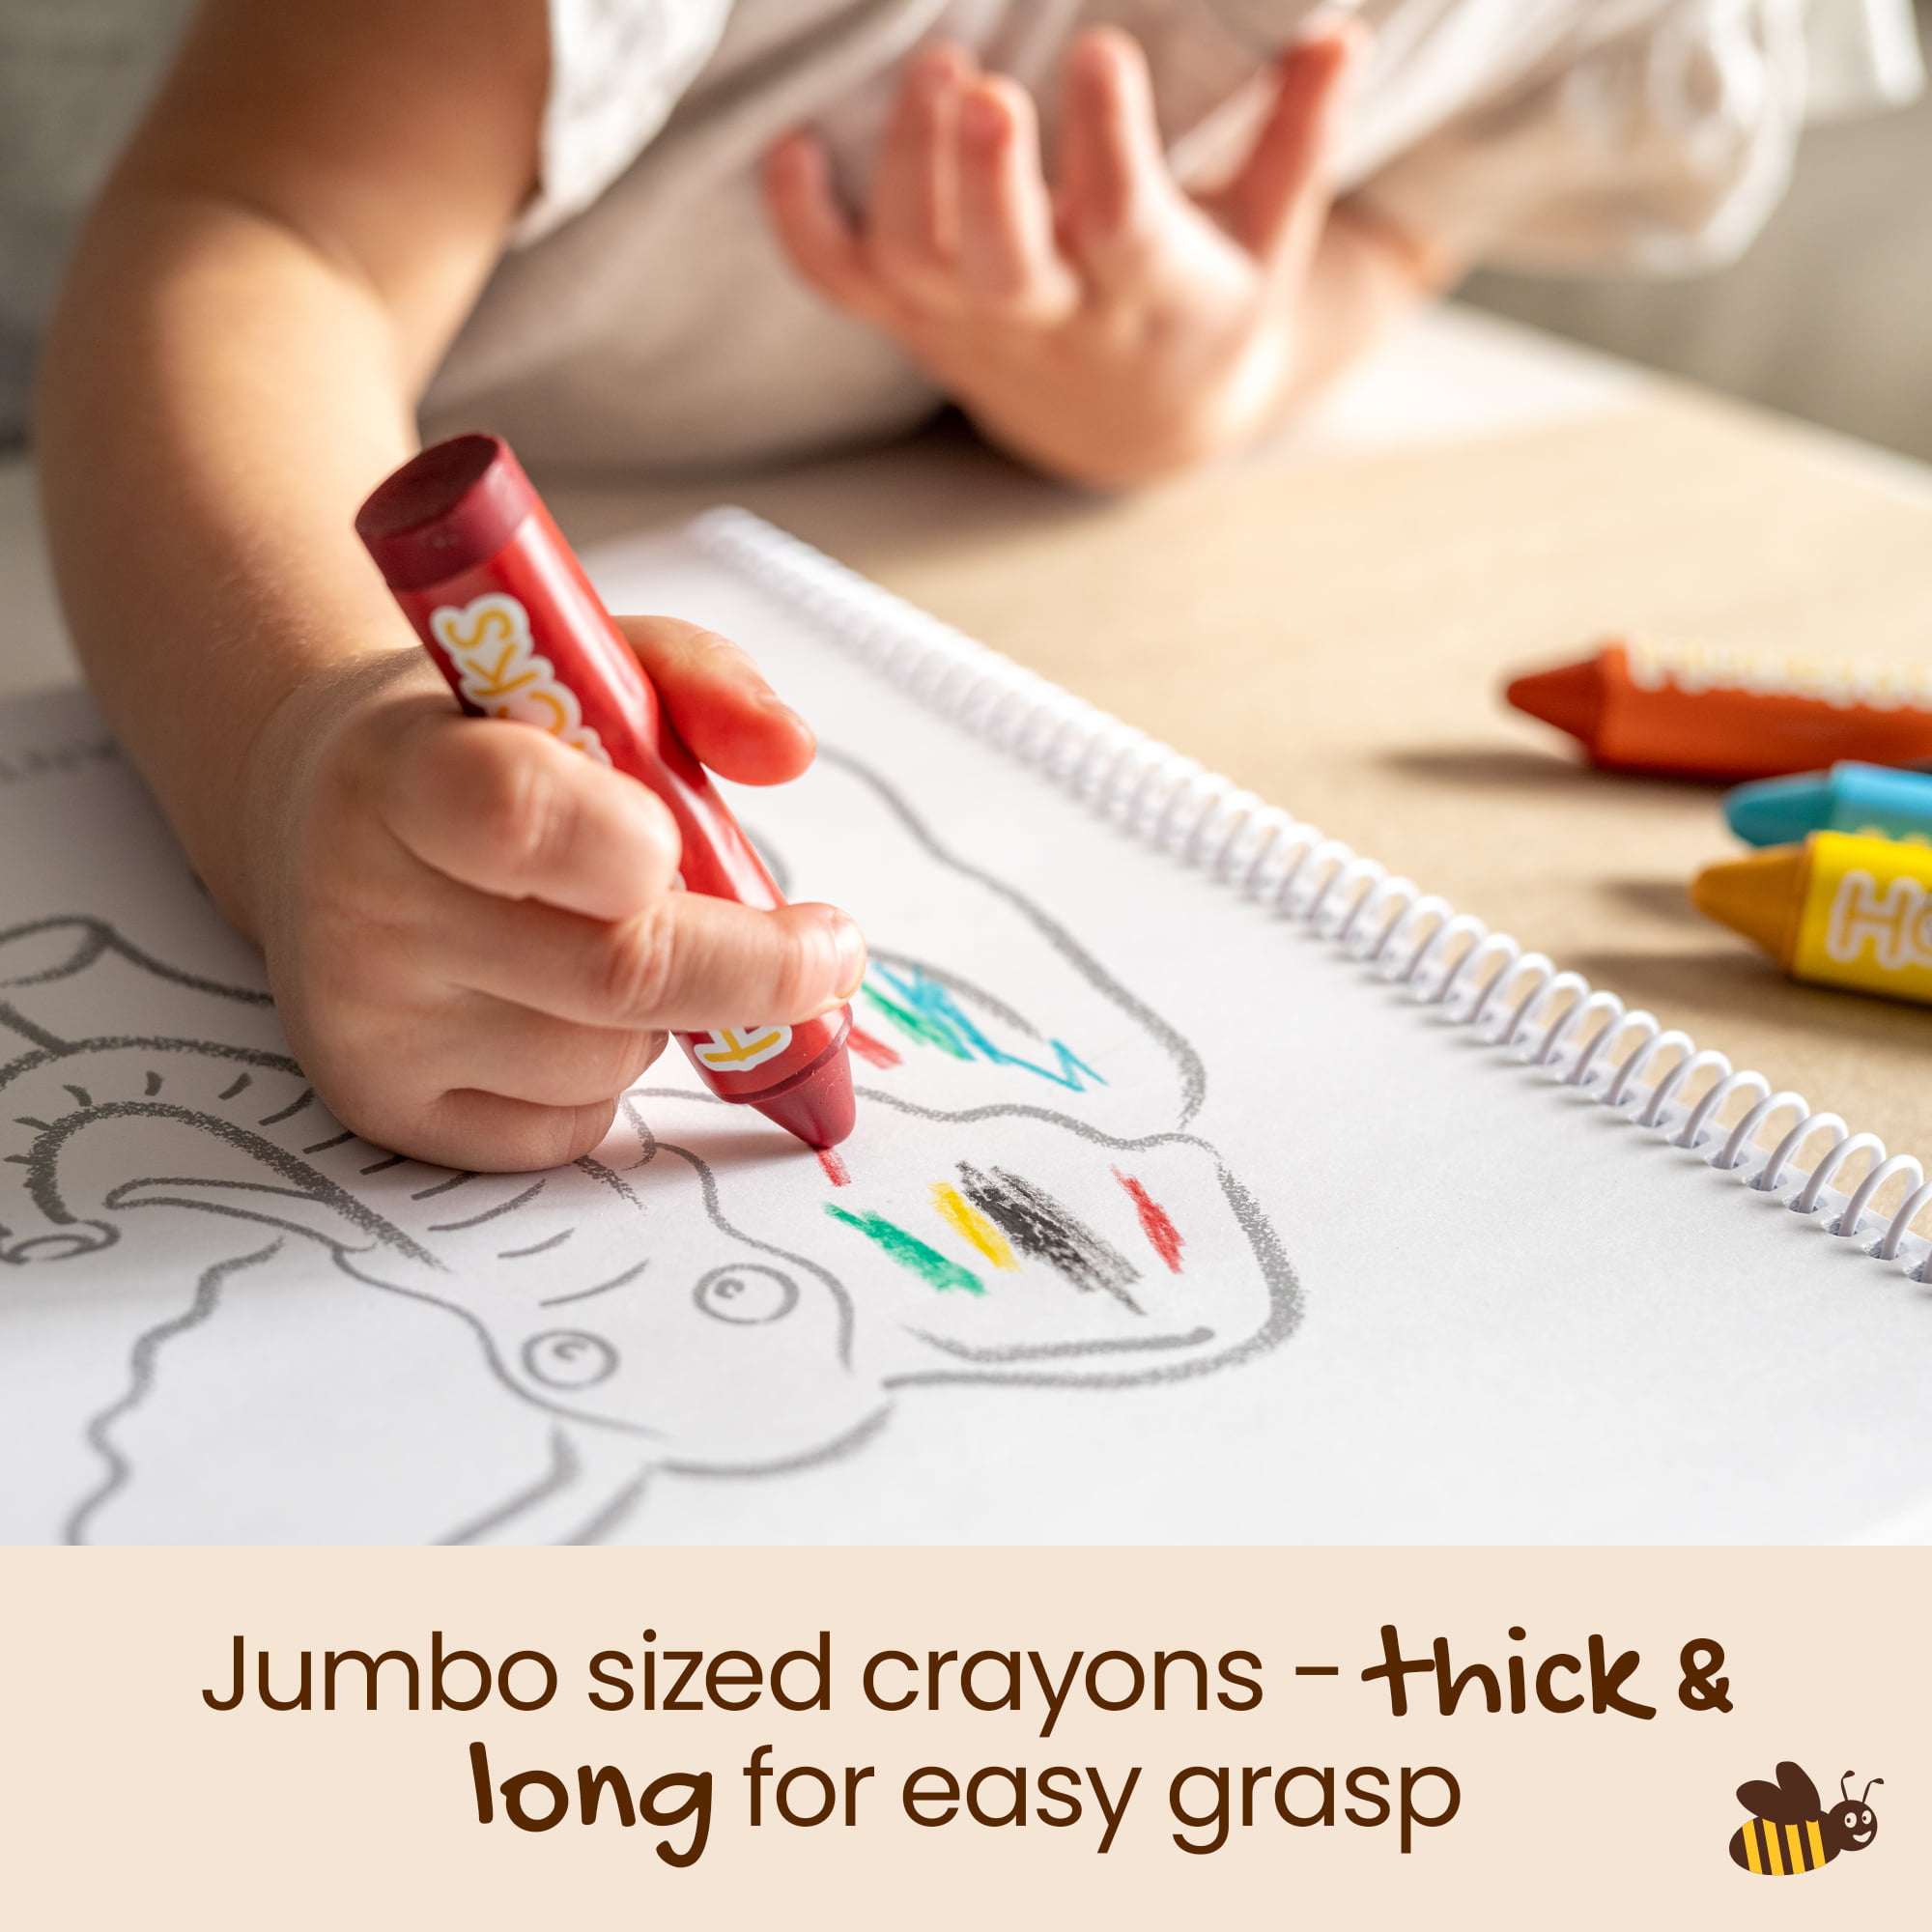 Honeysticks 100% Natural Beeswax Crayons - Jumbo Size Crayons for